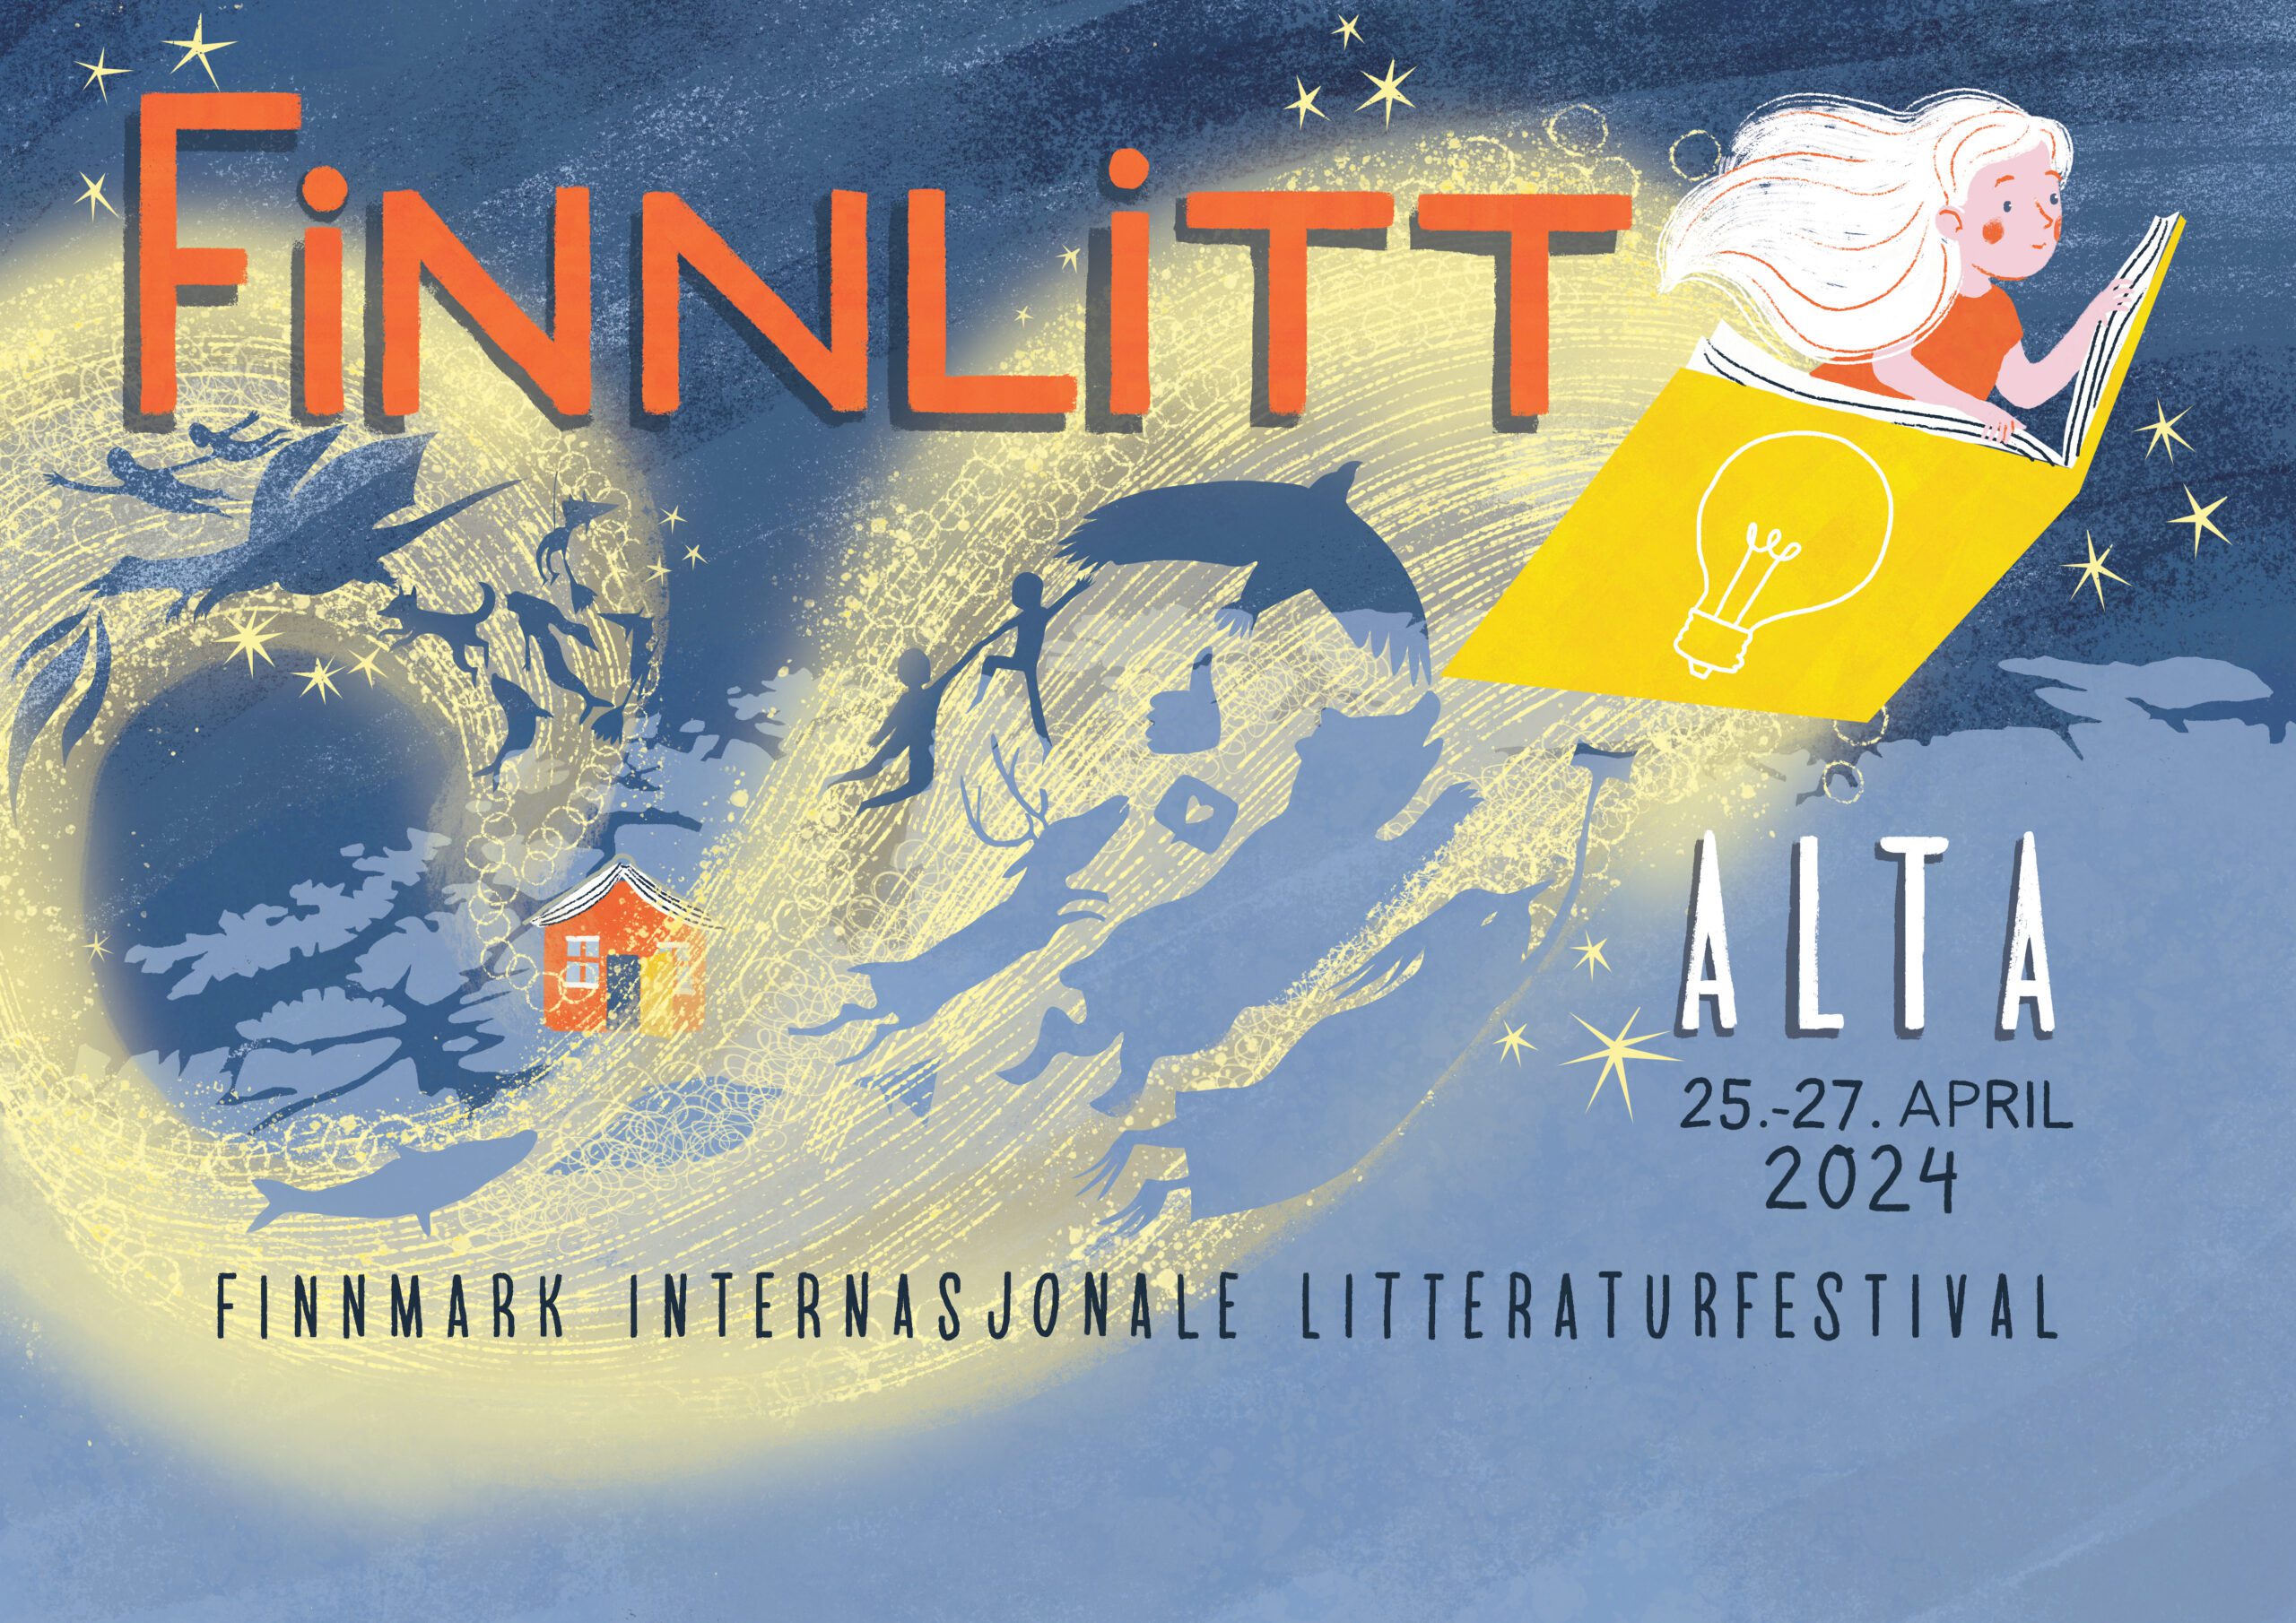 Festivalplakat for Finnlitt 2024